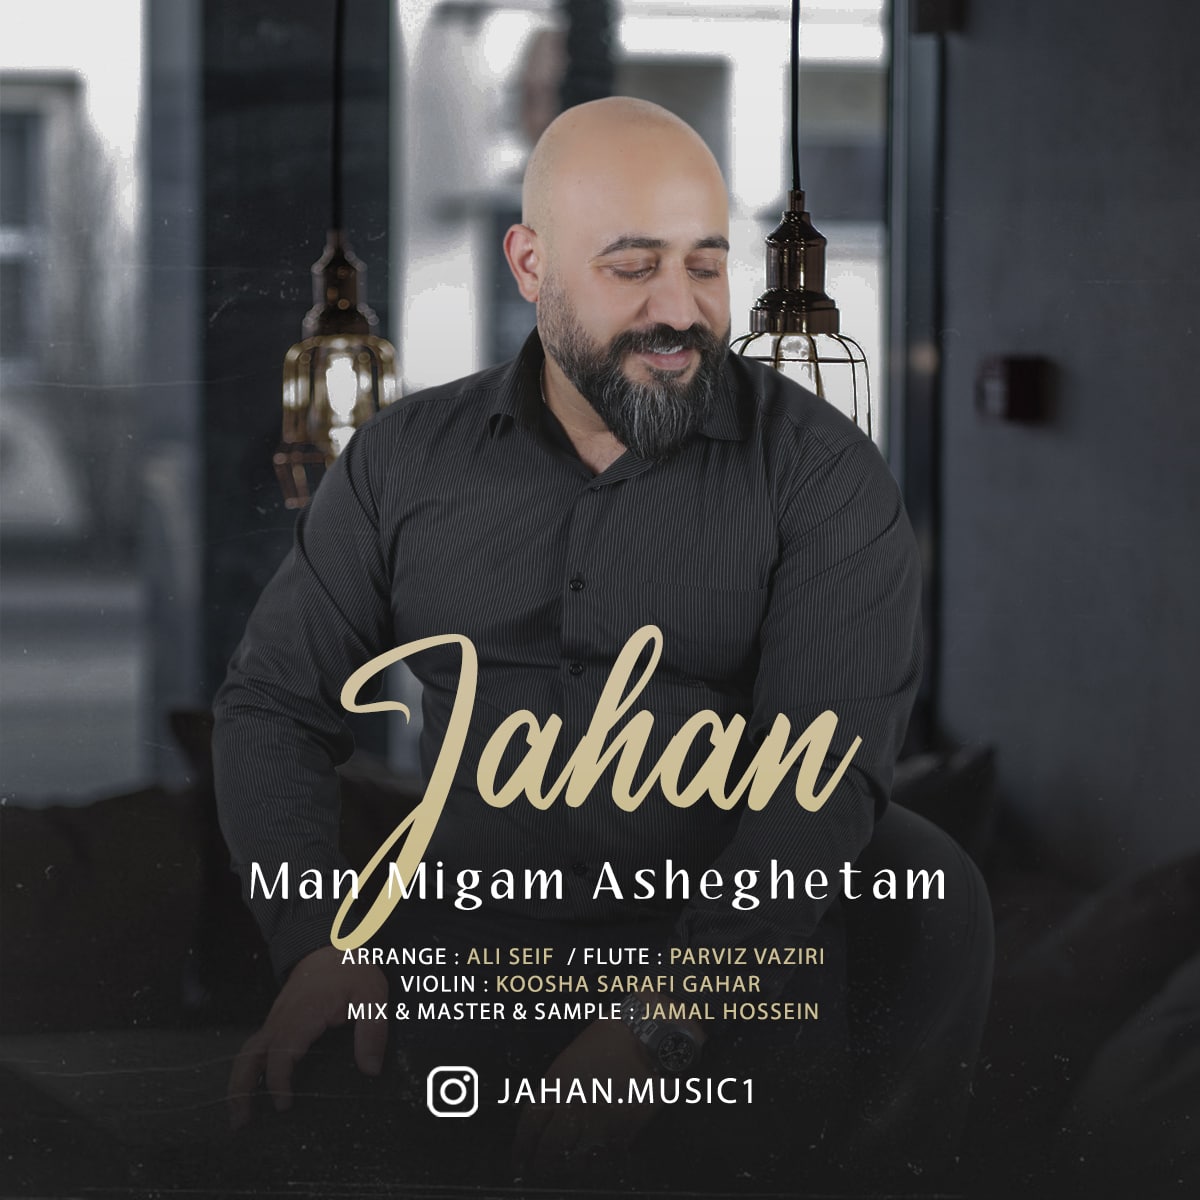 Jahan – Man Migam Asheghetam